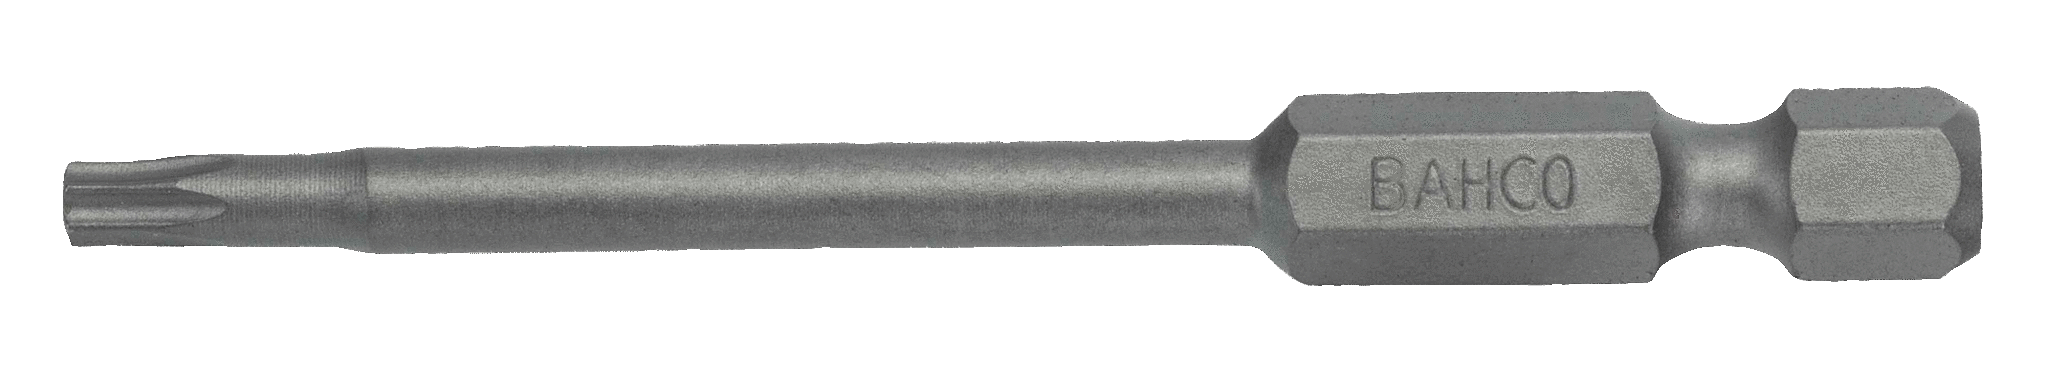 картинка Стандартные биты для отверток Torx® TR, 70 мм BAHCO 59S/70TR15-2P от магазина "Элит-инструмент"